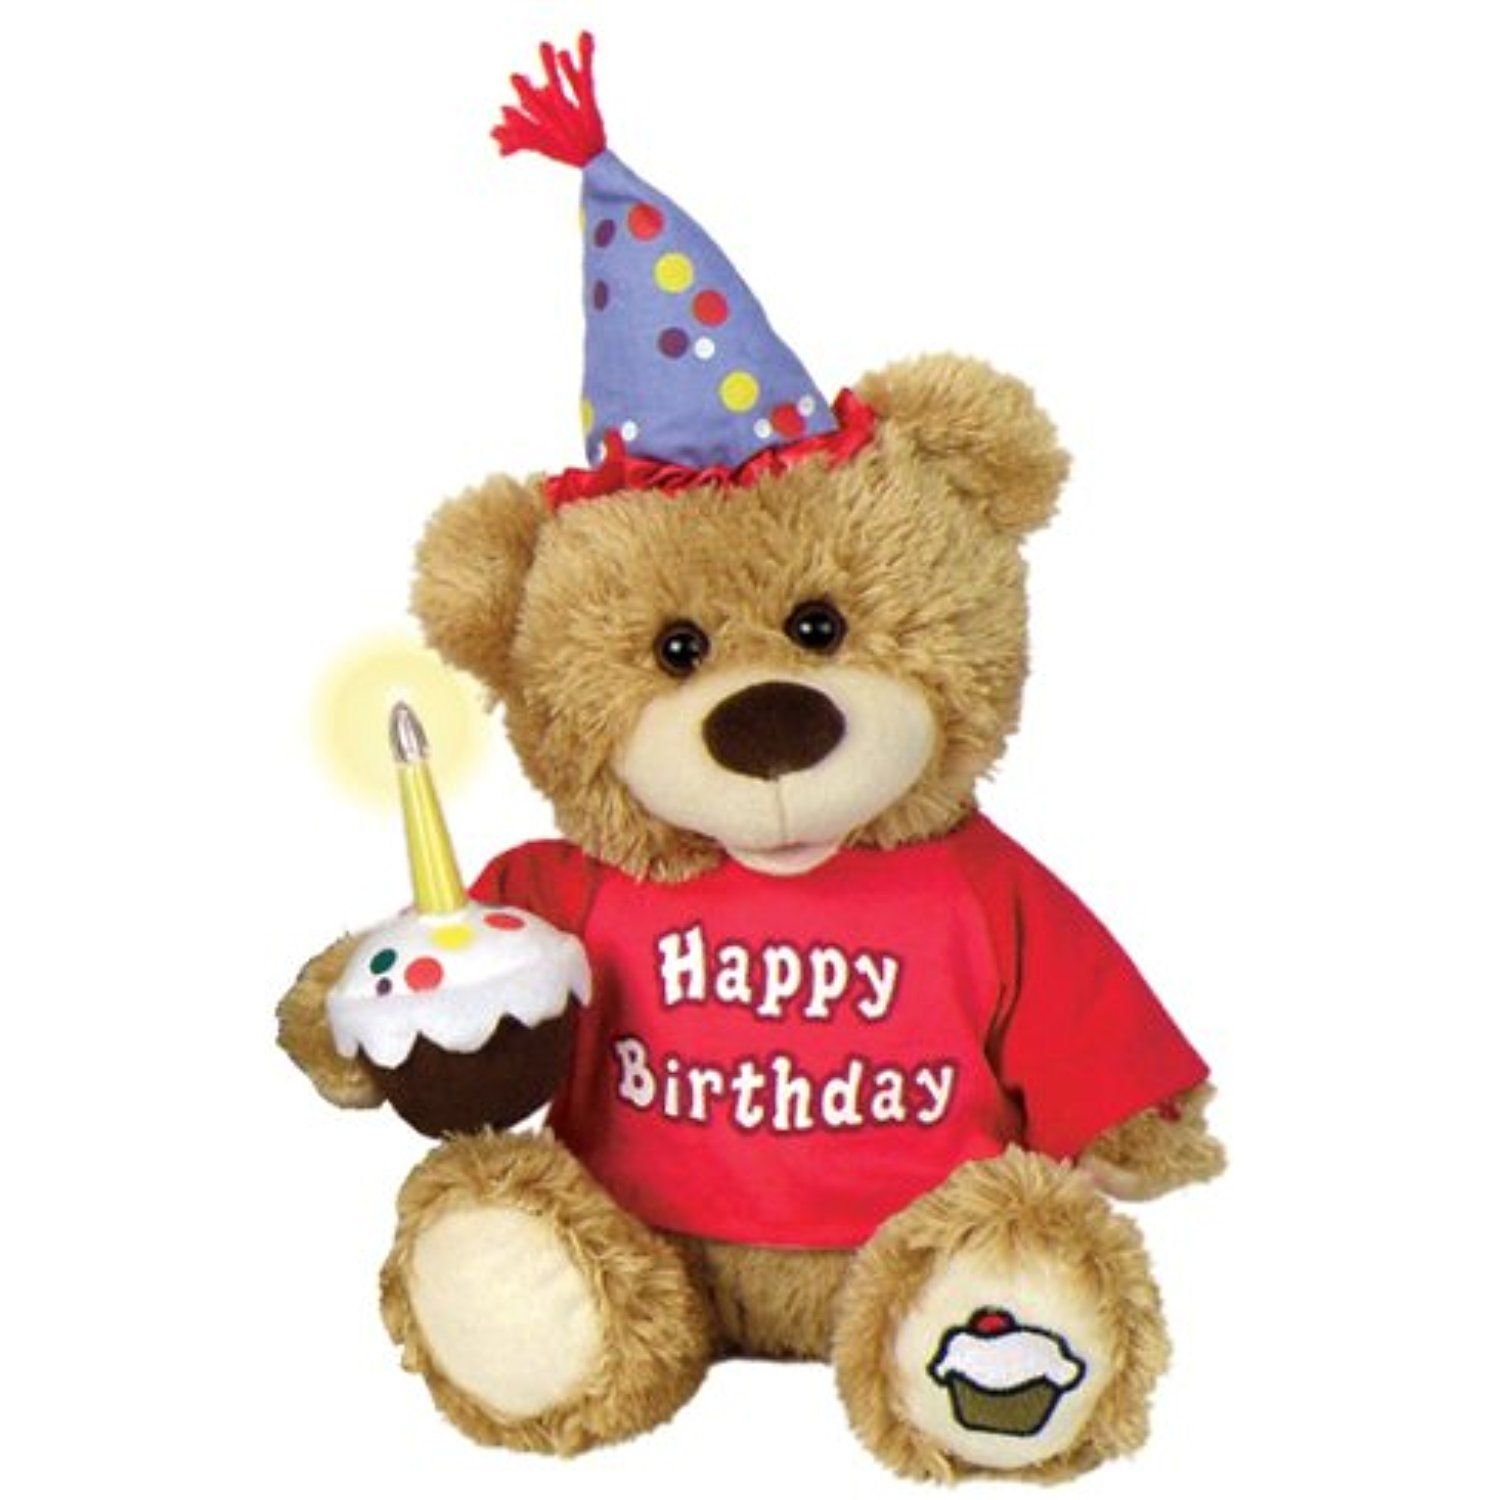 Заказать мишку для поздравления. Мягкие игрушки на день рождения. Мягкая игрушка «мишка». С днем рождения мишка. Плюшевые мышки на день рождения.